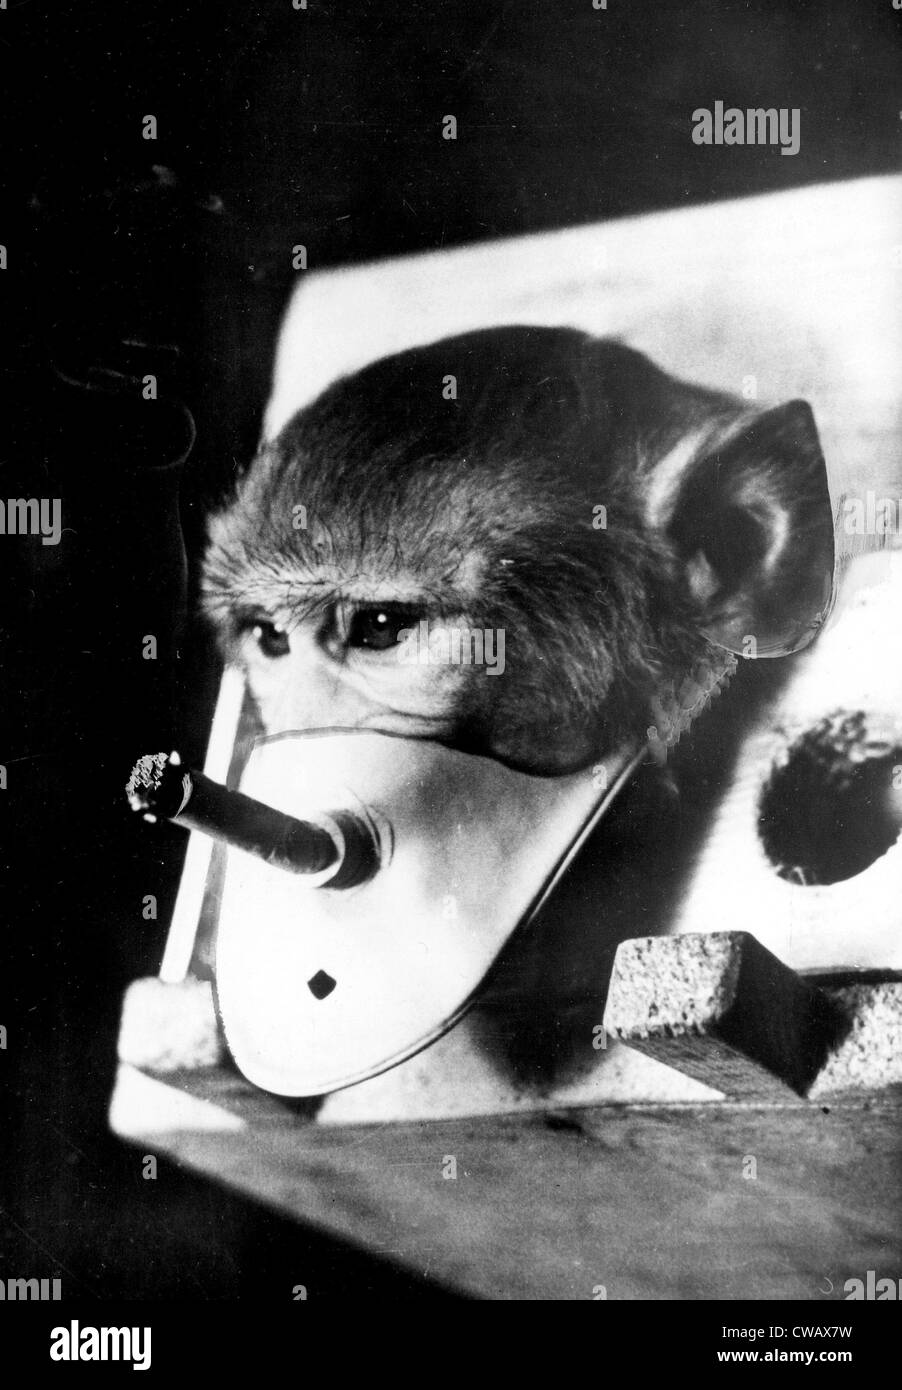 Singe rhésus, être forcé à fumer : il participe à la recherche sur le tabagisme et la santé russe, 1967. Avec la permission des Archives / CSU : Banque D'Images